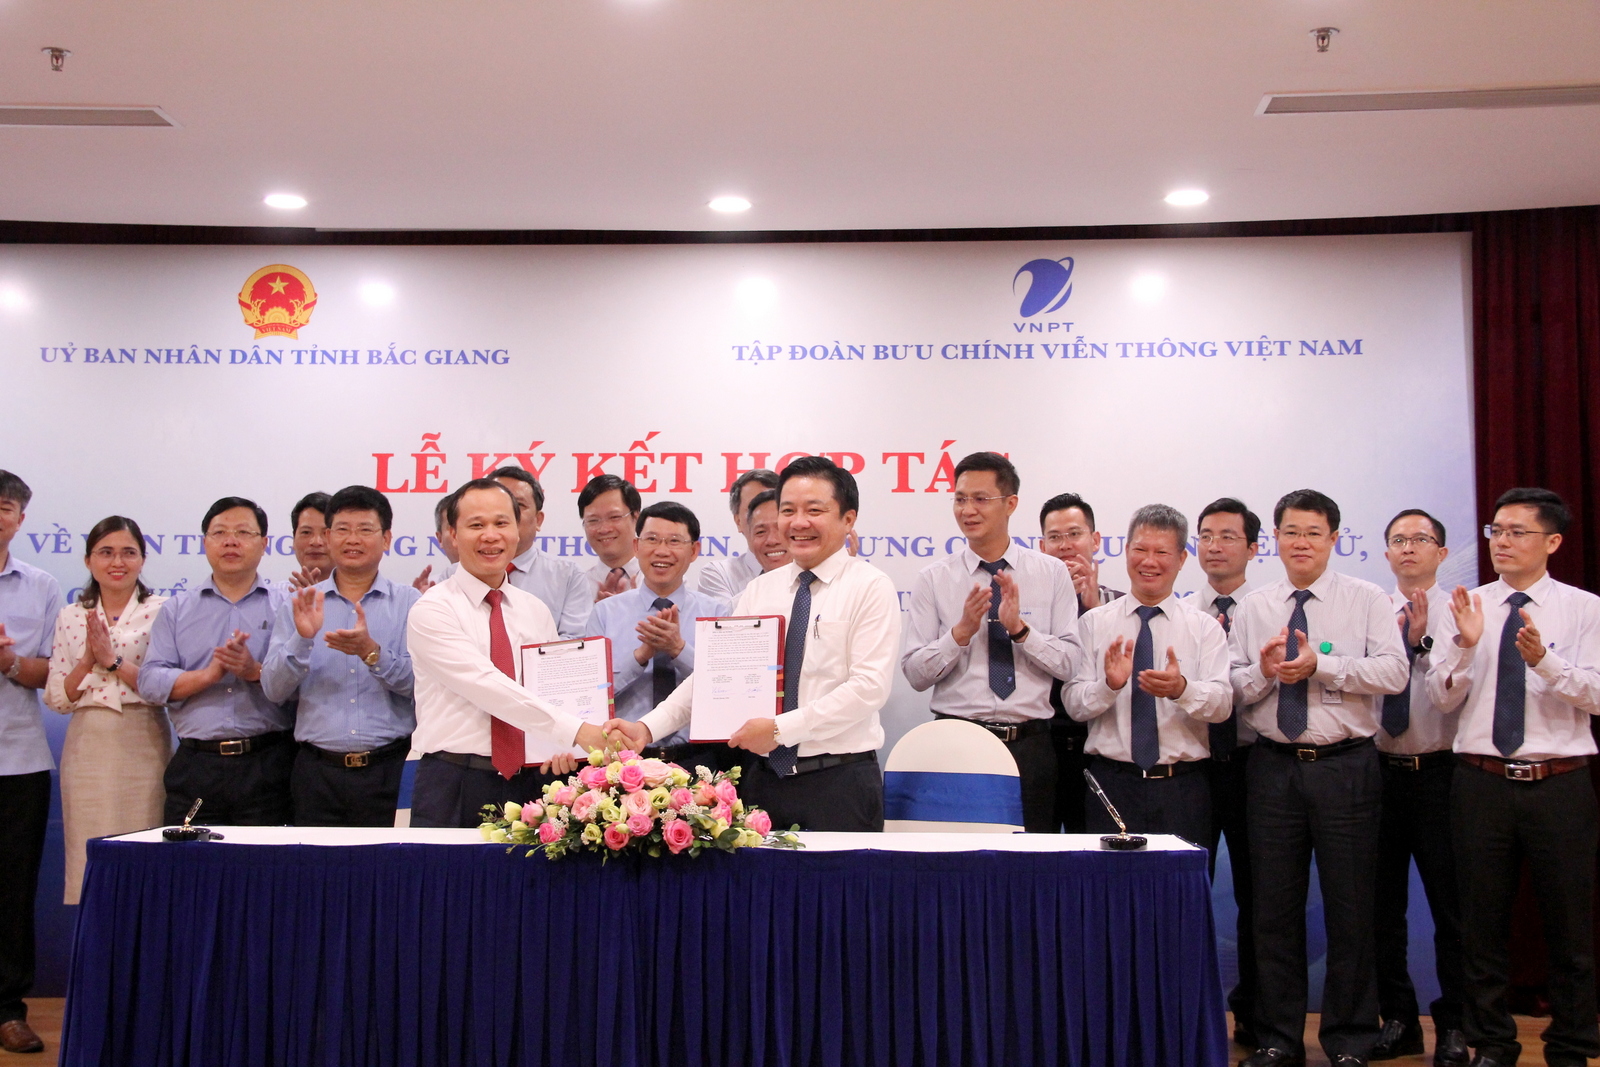 UBND tỉnh Bắc Giang và Tập đoàn Bưu chính Viễn thông Việt Nam ký kết thỏa thuận hợp tác giai đoạn...